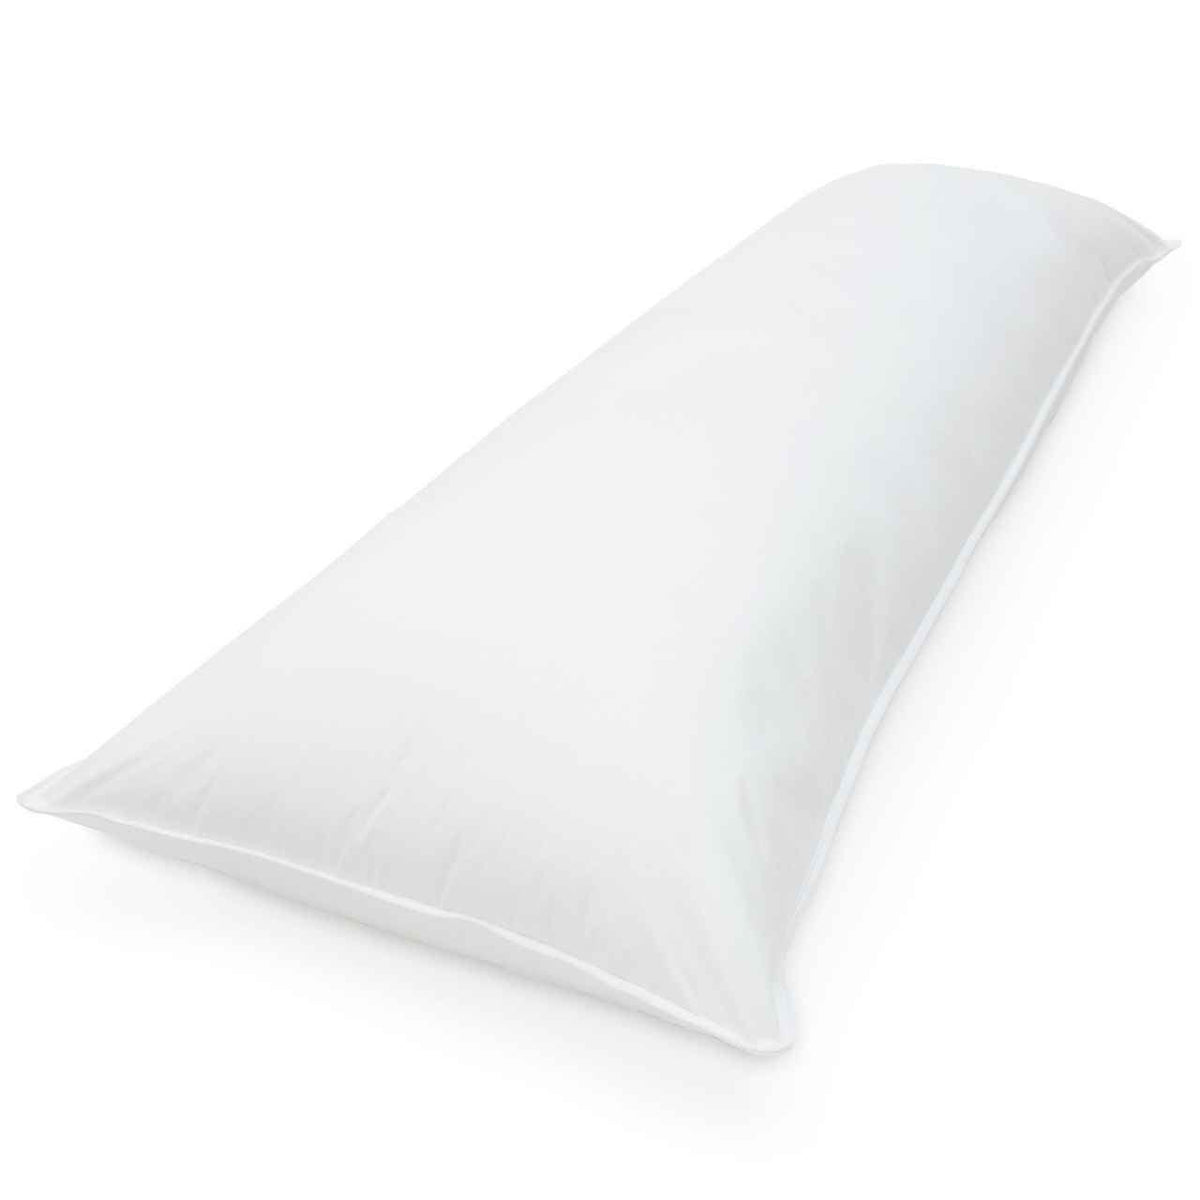 Downlite 300 TC Extra Long Body Pillow (20 x 60) - beddingbag.com